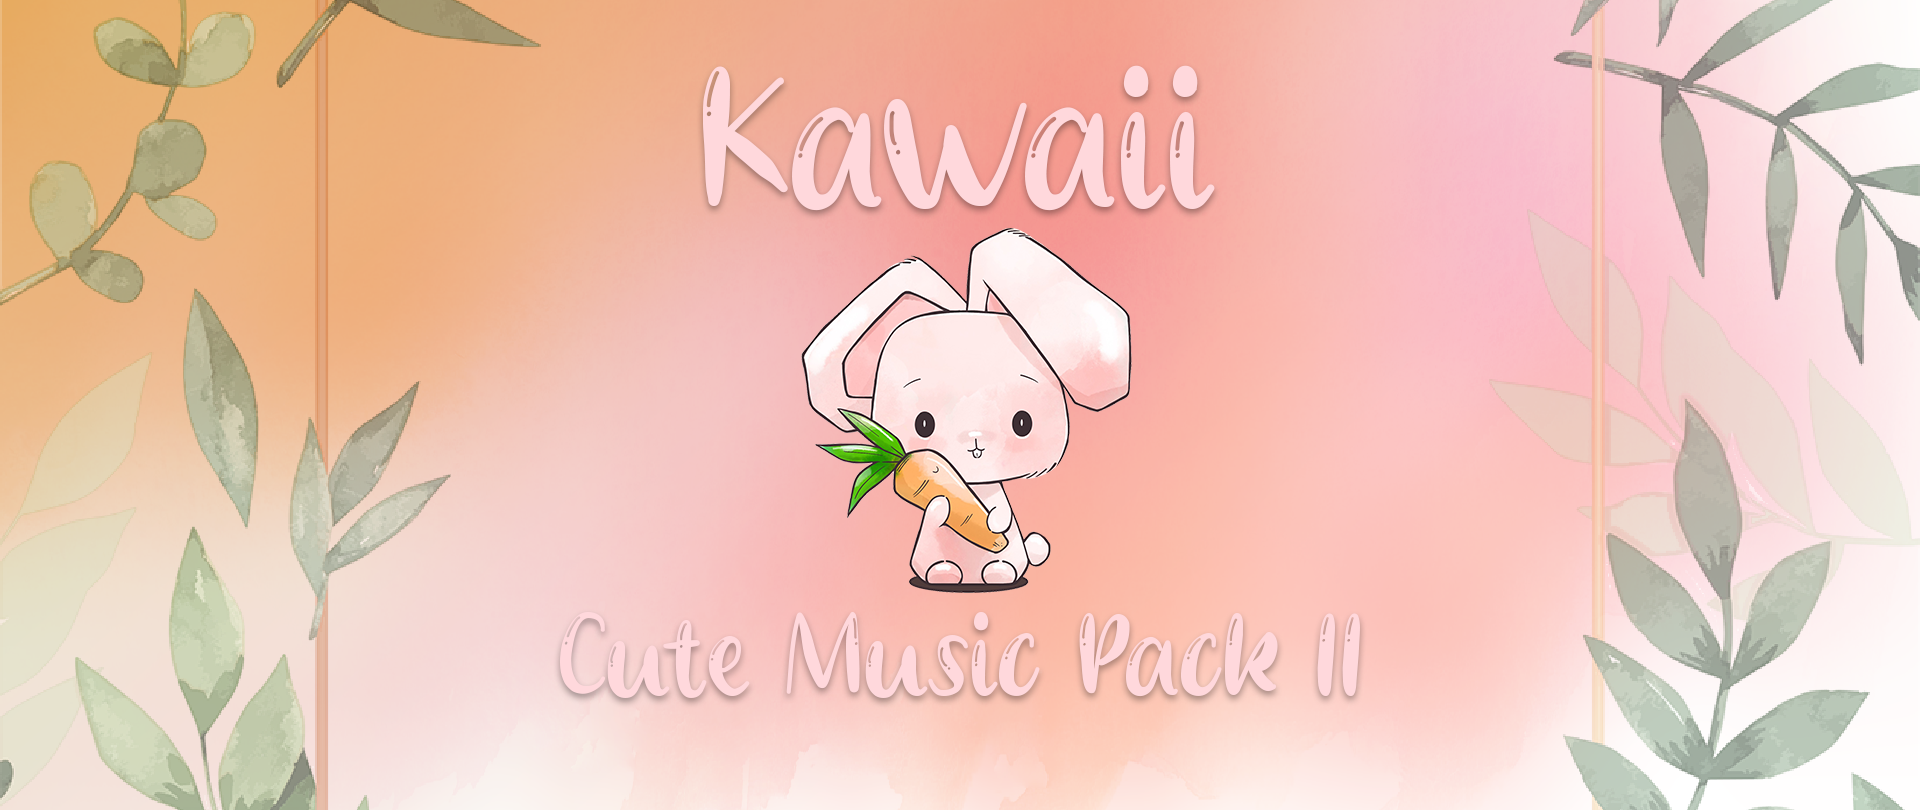 Cute RPG Music Pack 2